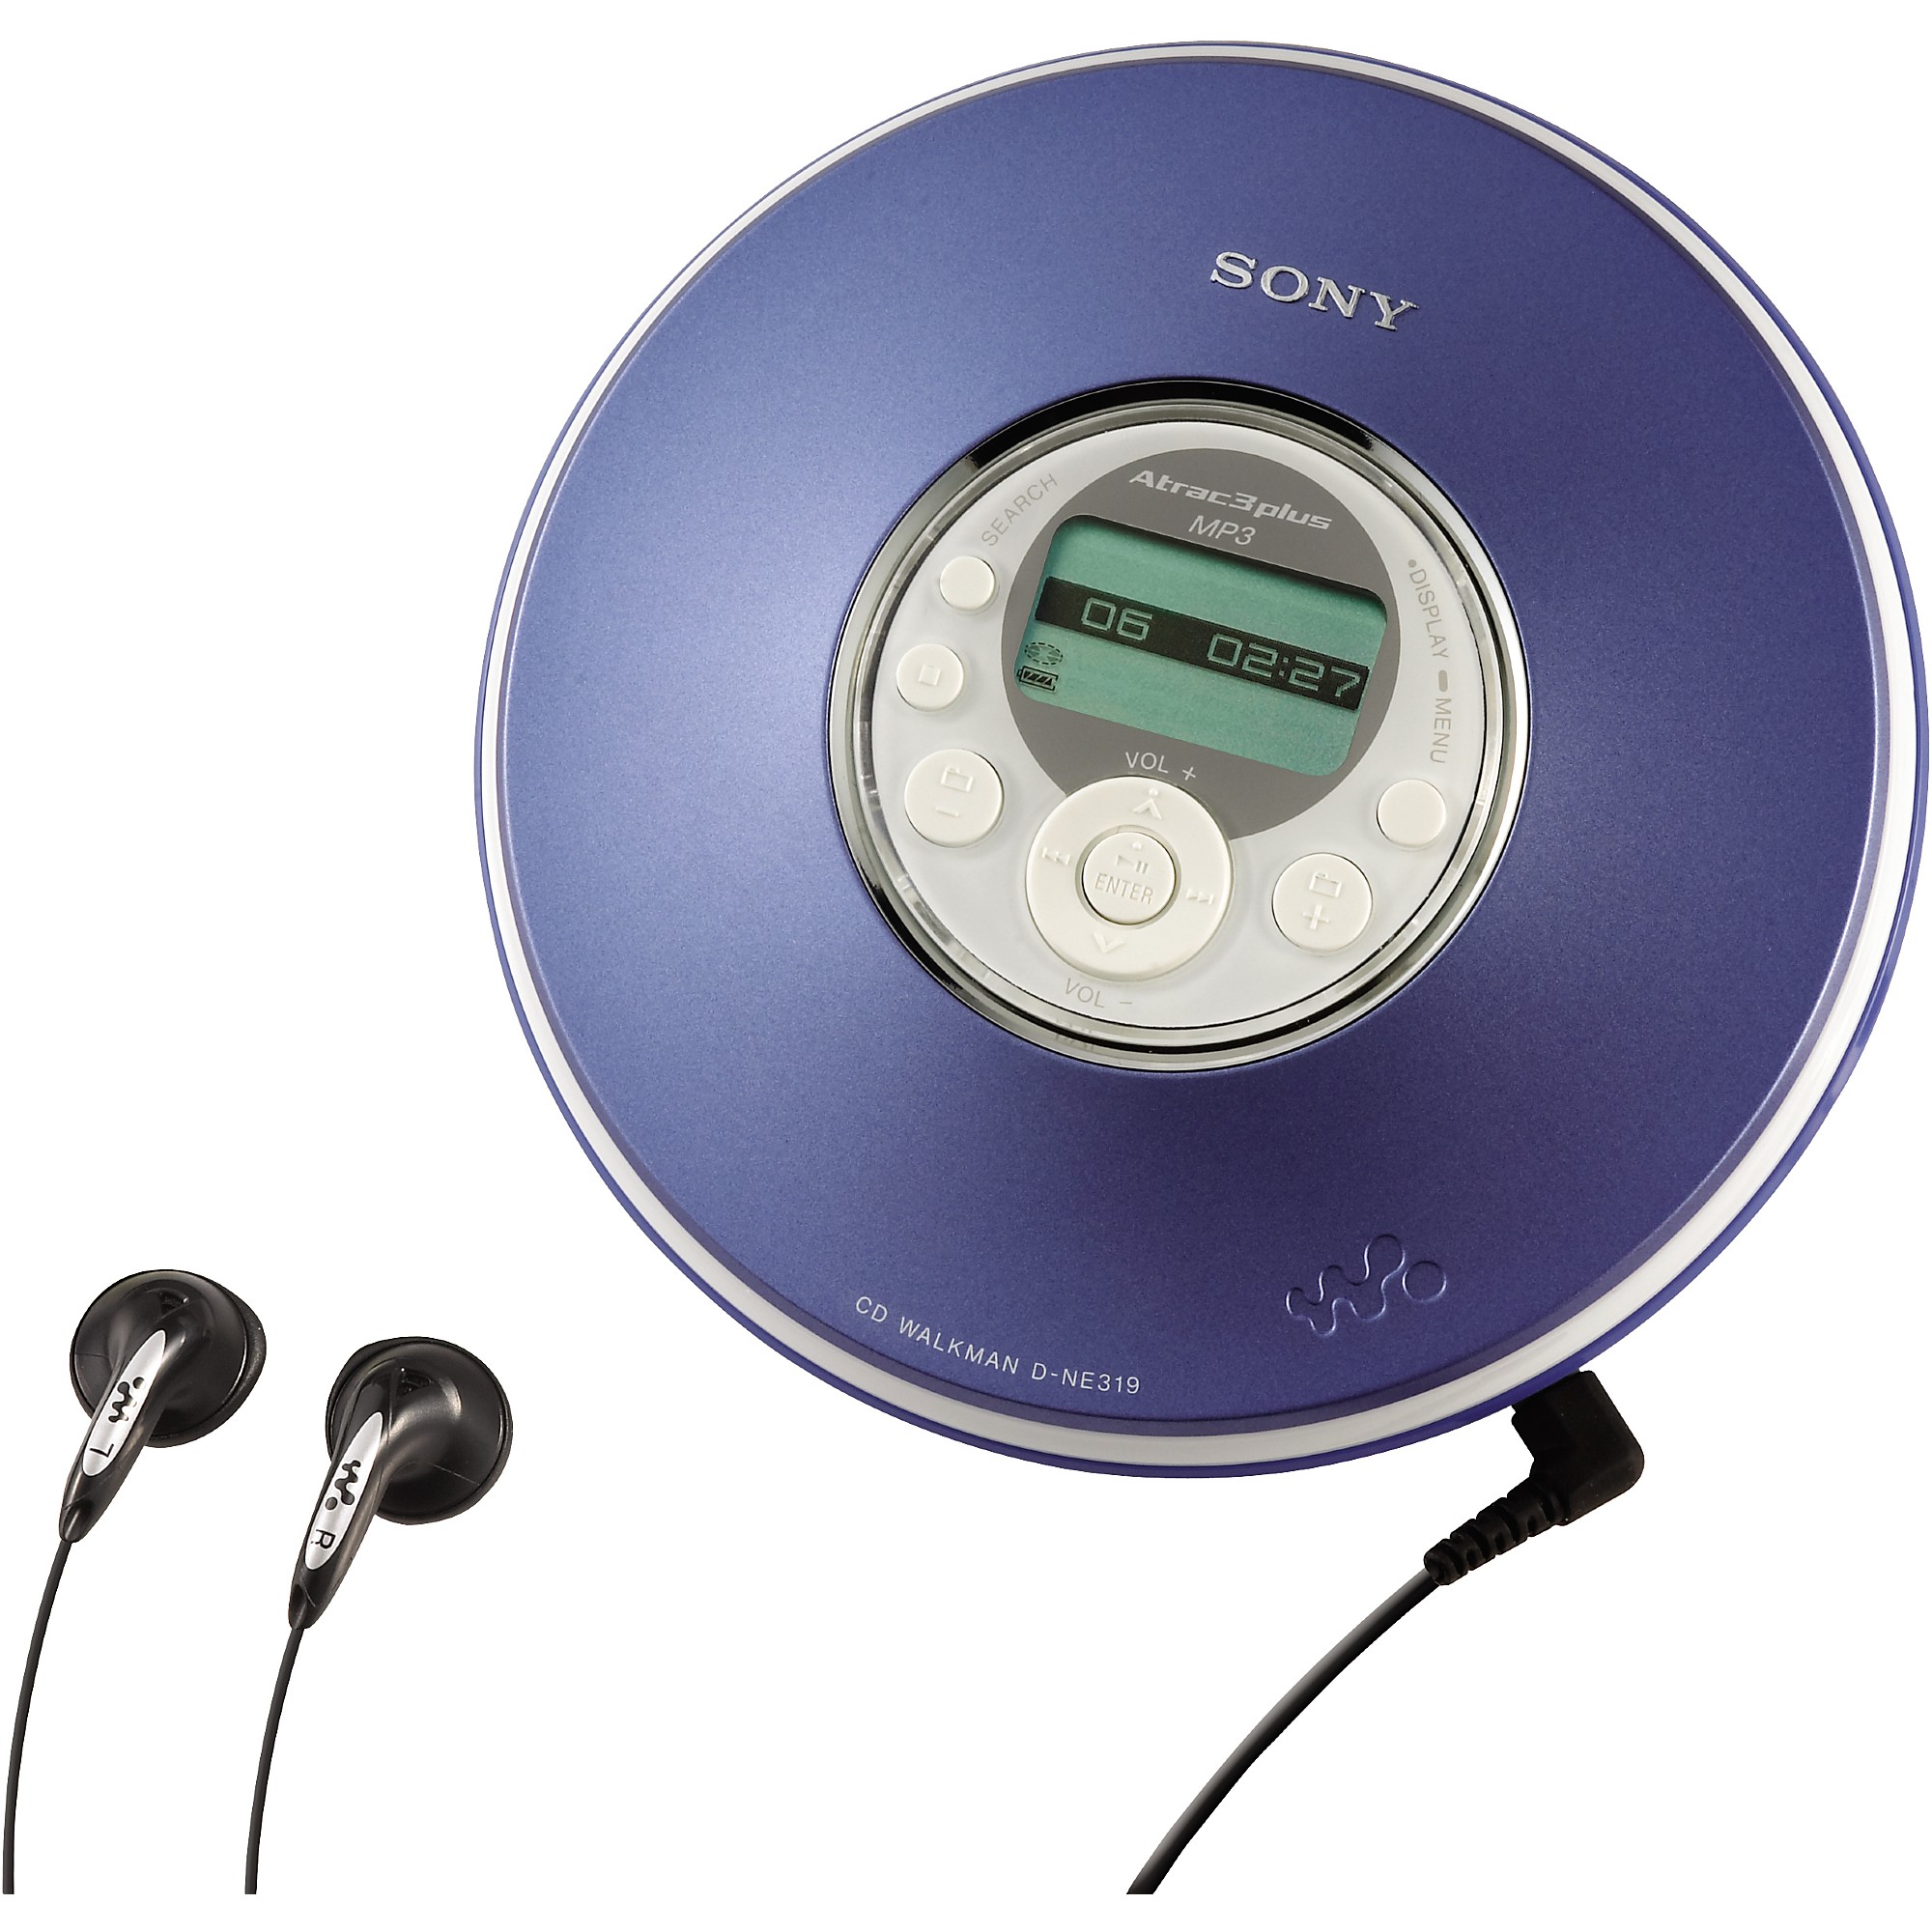 Cd mp3 player. CD плеер Sony d-ne240. Sony Walkman CD. CD плеер Sony Walkman. Mp3 плеер Sony Walkman d-ne720.